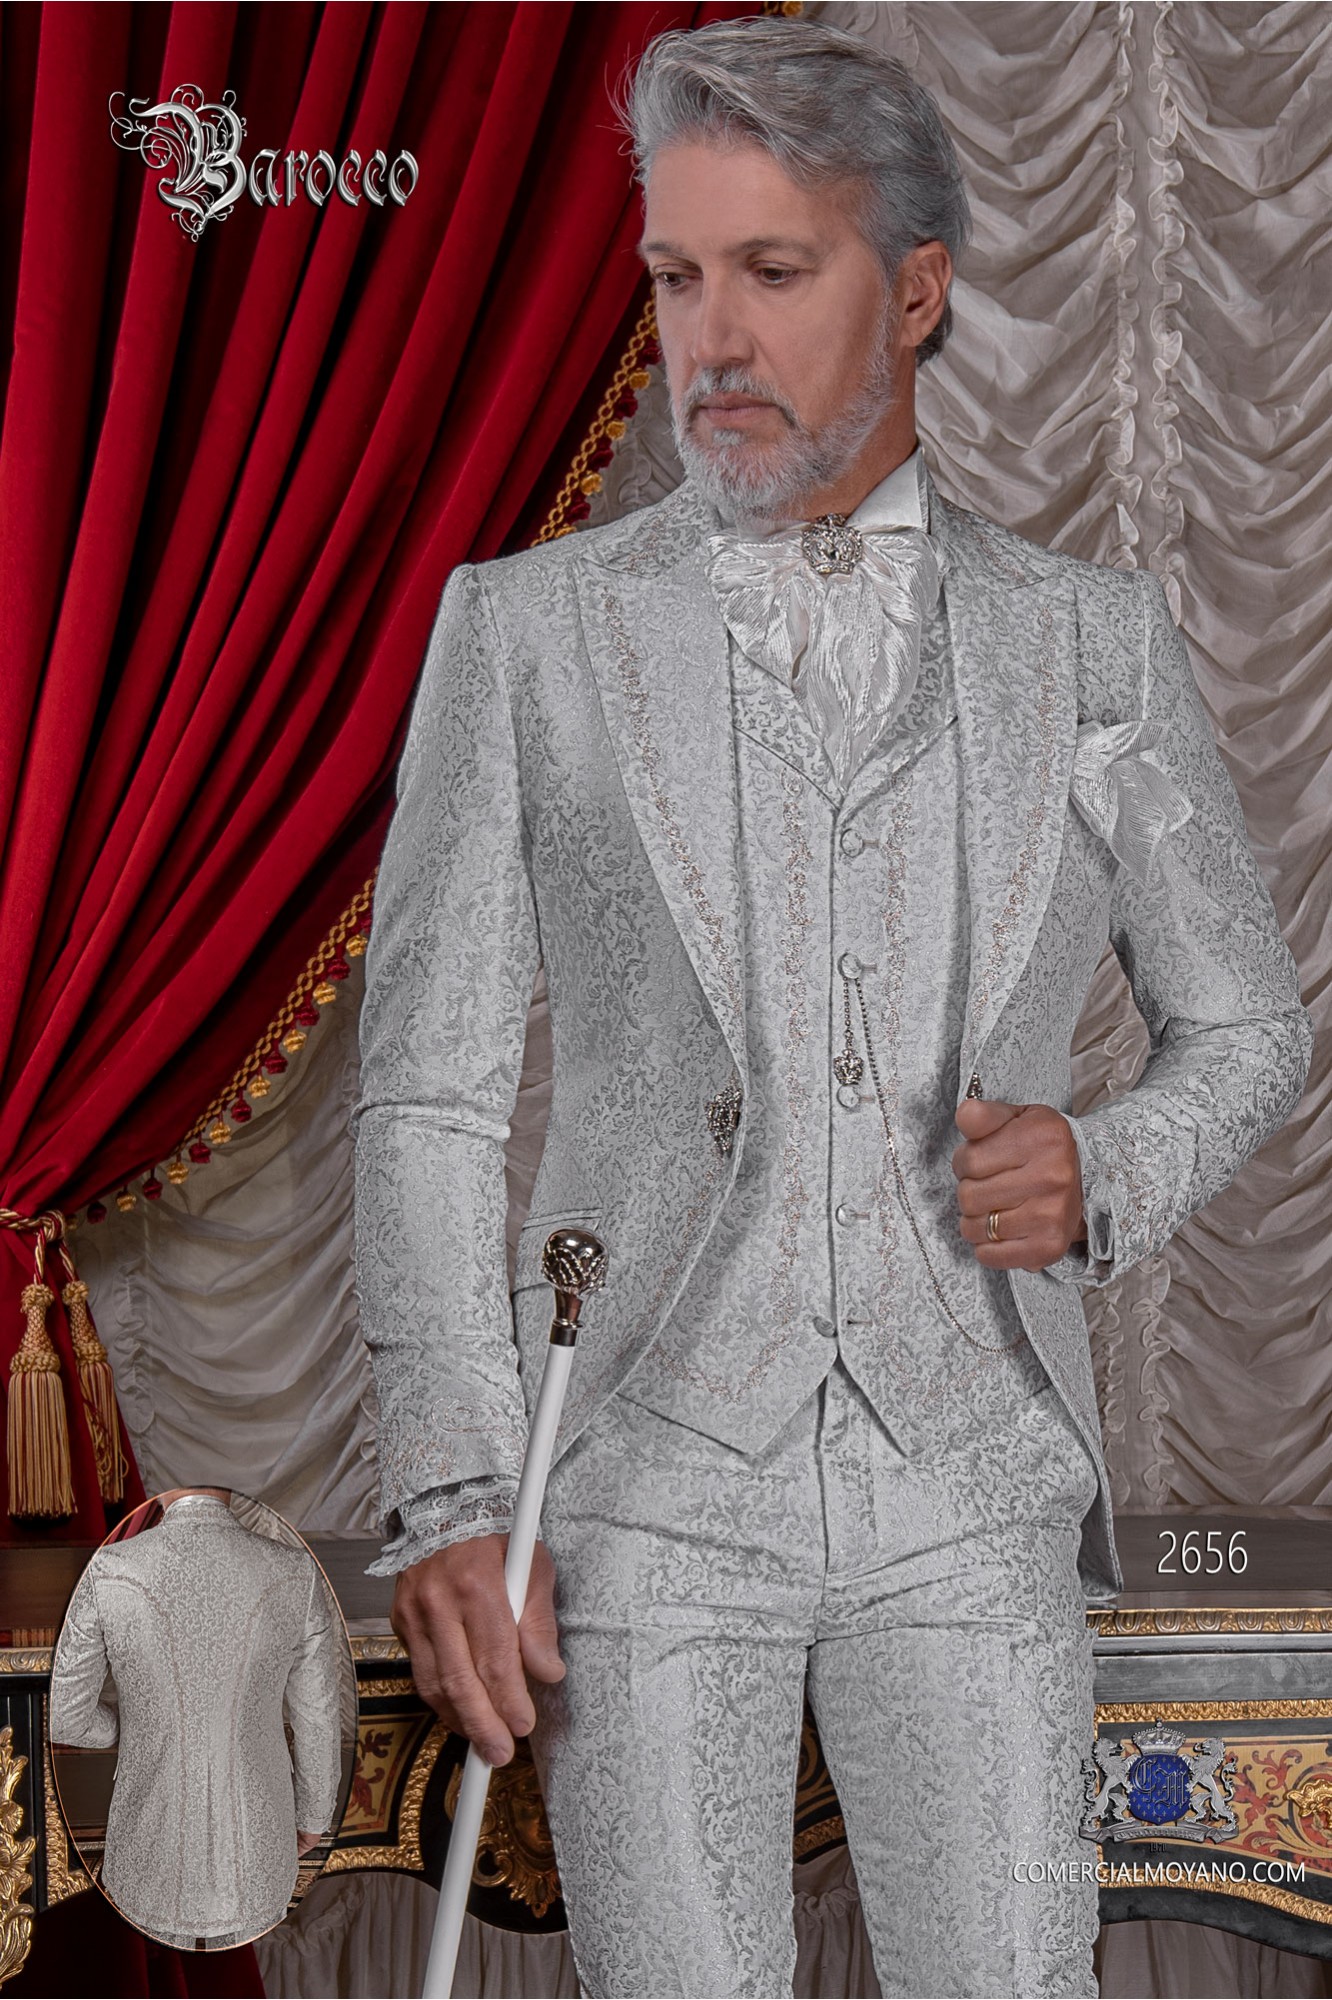 Traje de novio barroco, levita de época en tejido jacquard gris perla con bordados plateados y broche de cristal modelo: 2656 Mario Moyano colección Barroco